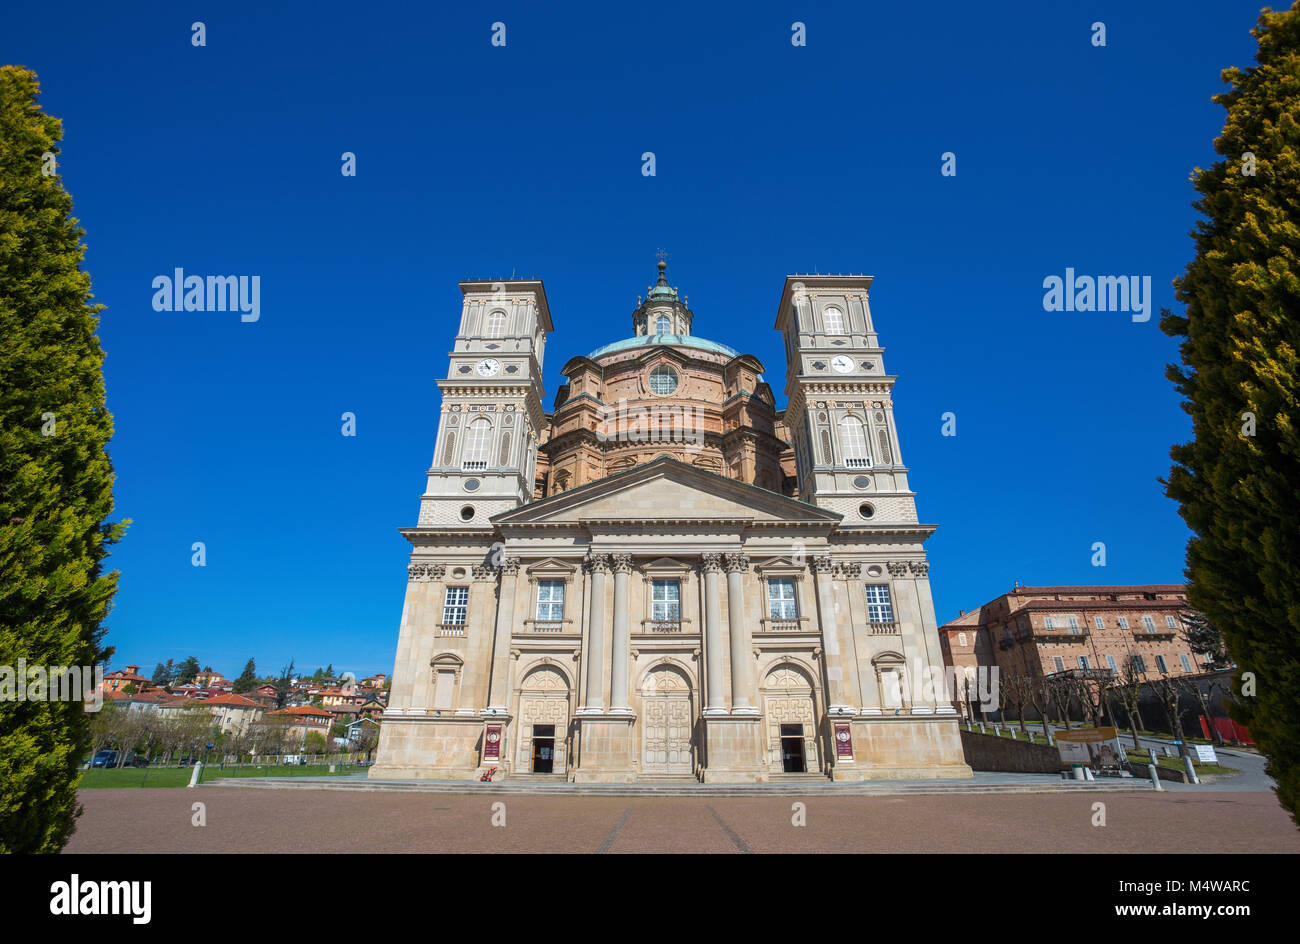 VICOFORTE, ITALIE 11 AVRIL 2017 - Sanctuaire de Vicoforte, façade principale, province de Cuneo, Piémont, Italie, le plus grand dôme elliptique dans le monde. Banque D'Images